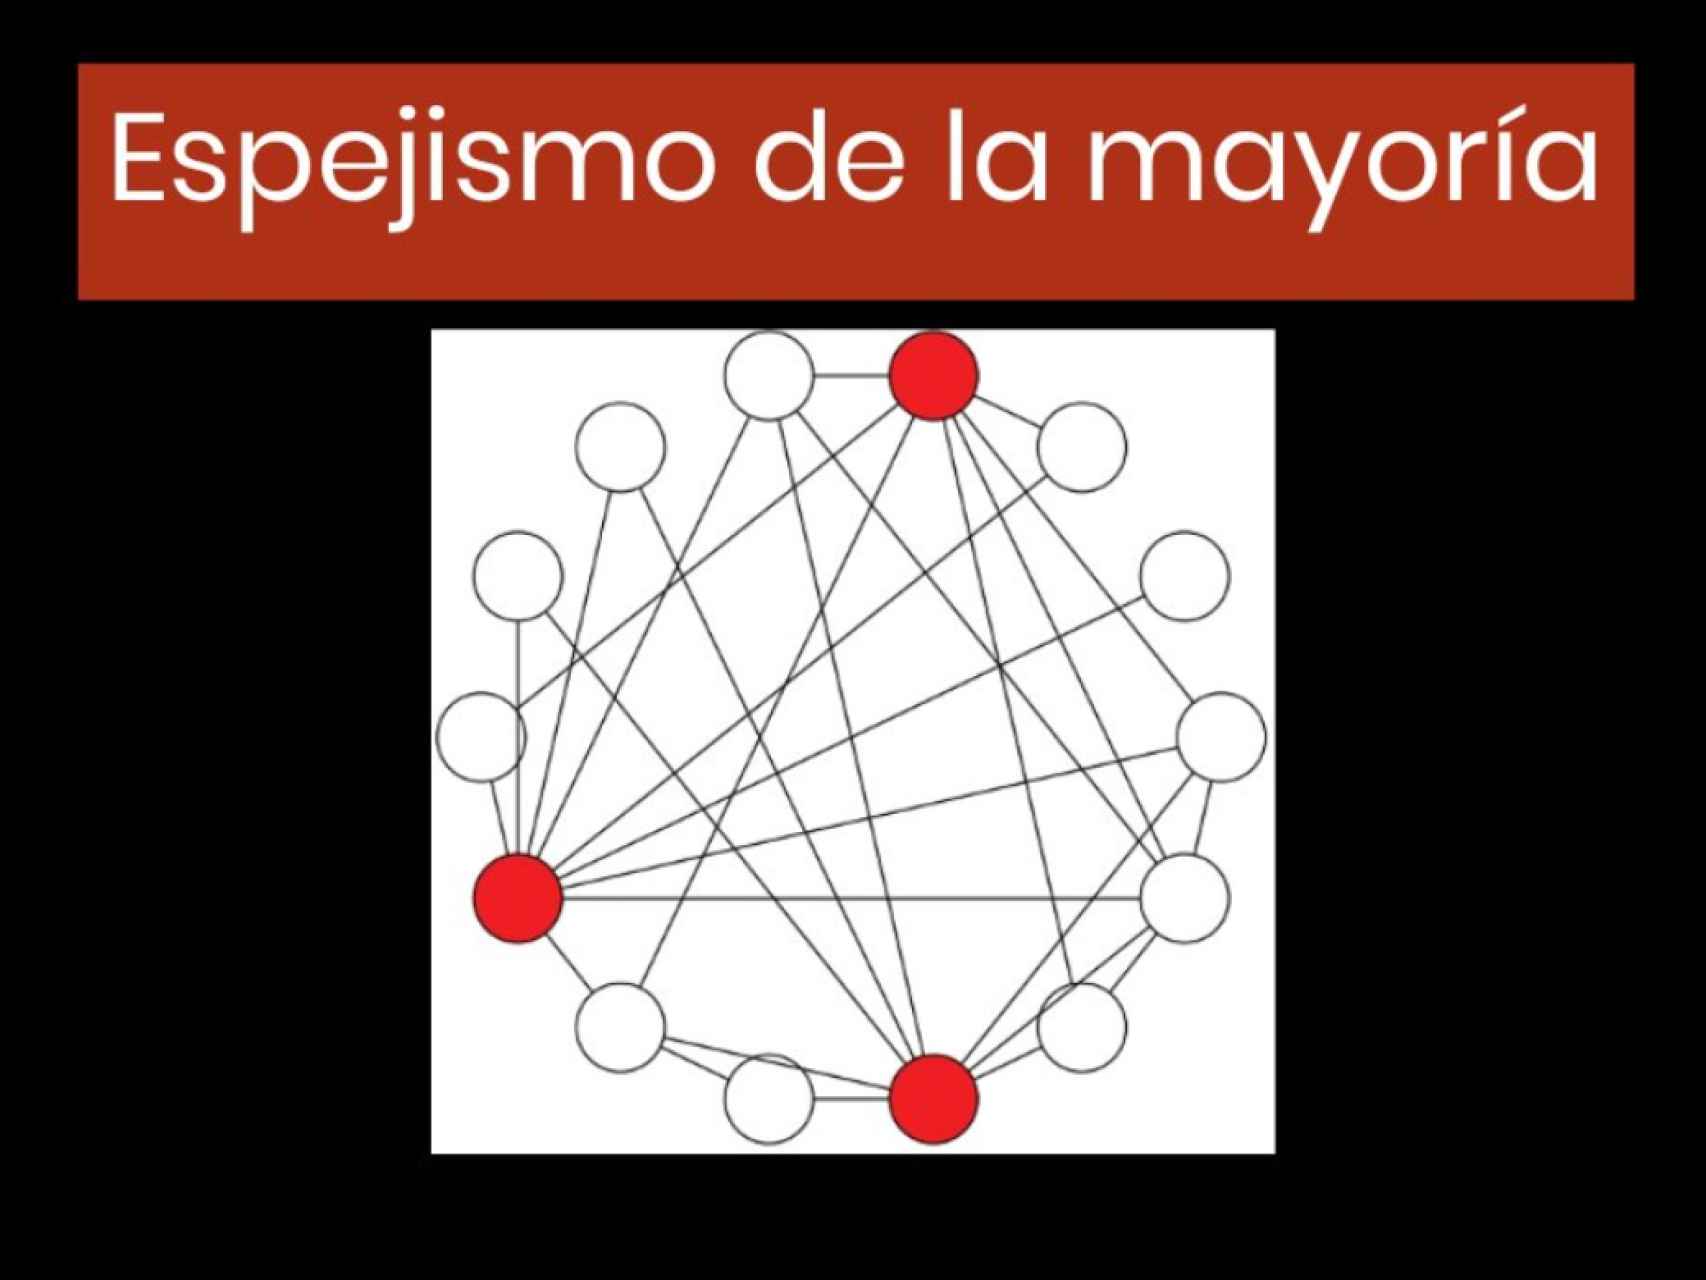 o	Este grafo representa el espejismo de la mayoría. Los puntos serían personas y las de color rojo, las influencers. Las líneas representan las relaciones entre esa comunidad.